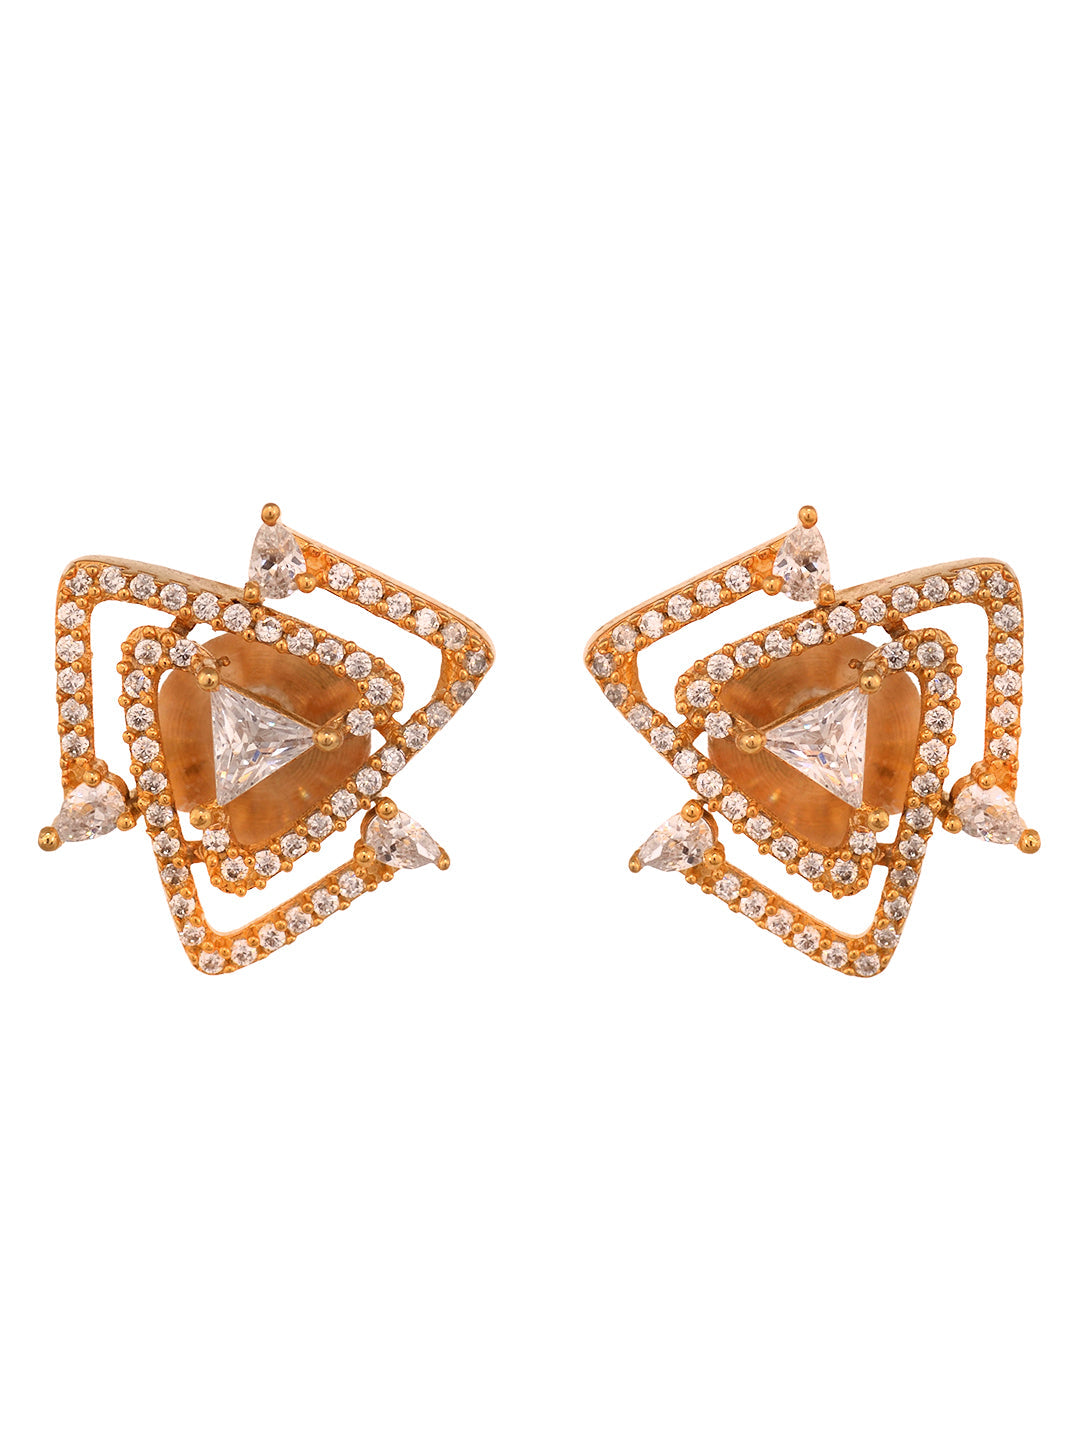 Star Shape Diamond Earrings in Yellow Gold - Ruby Lane